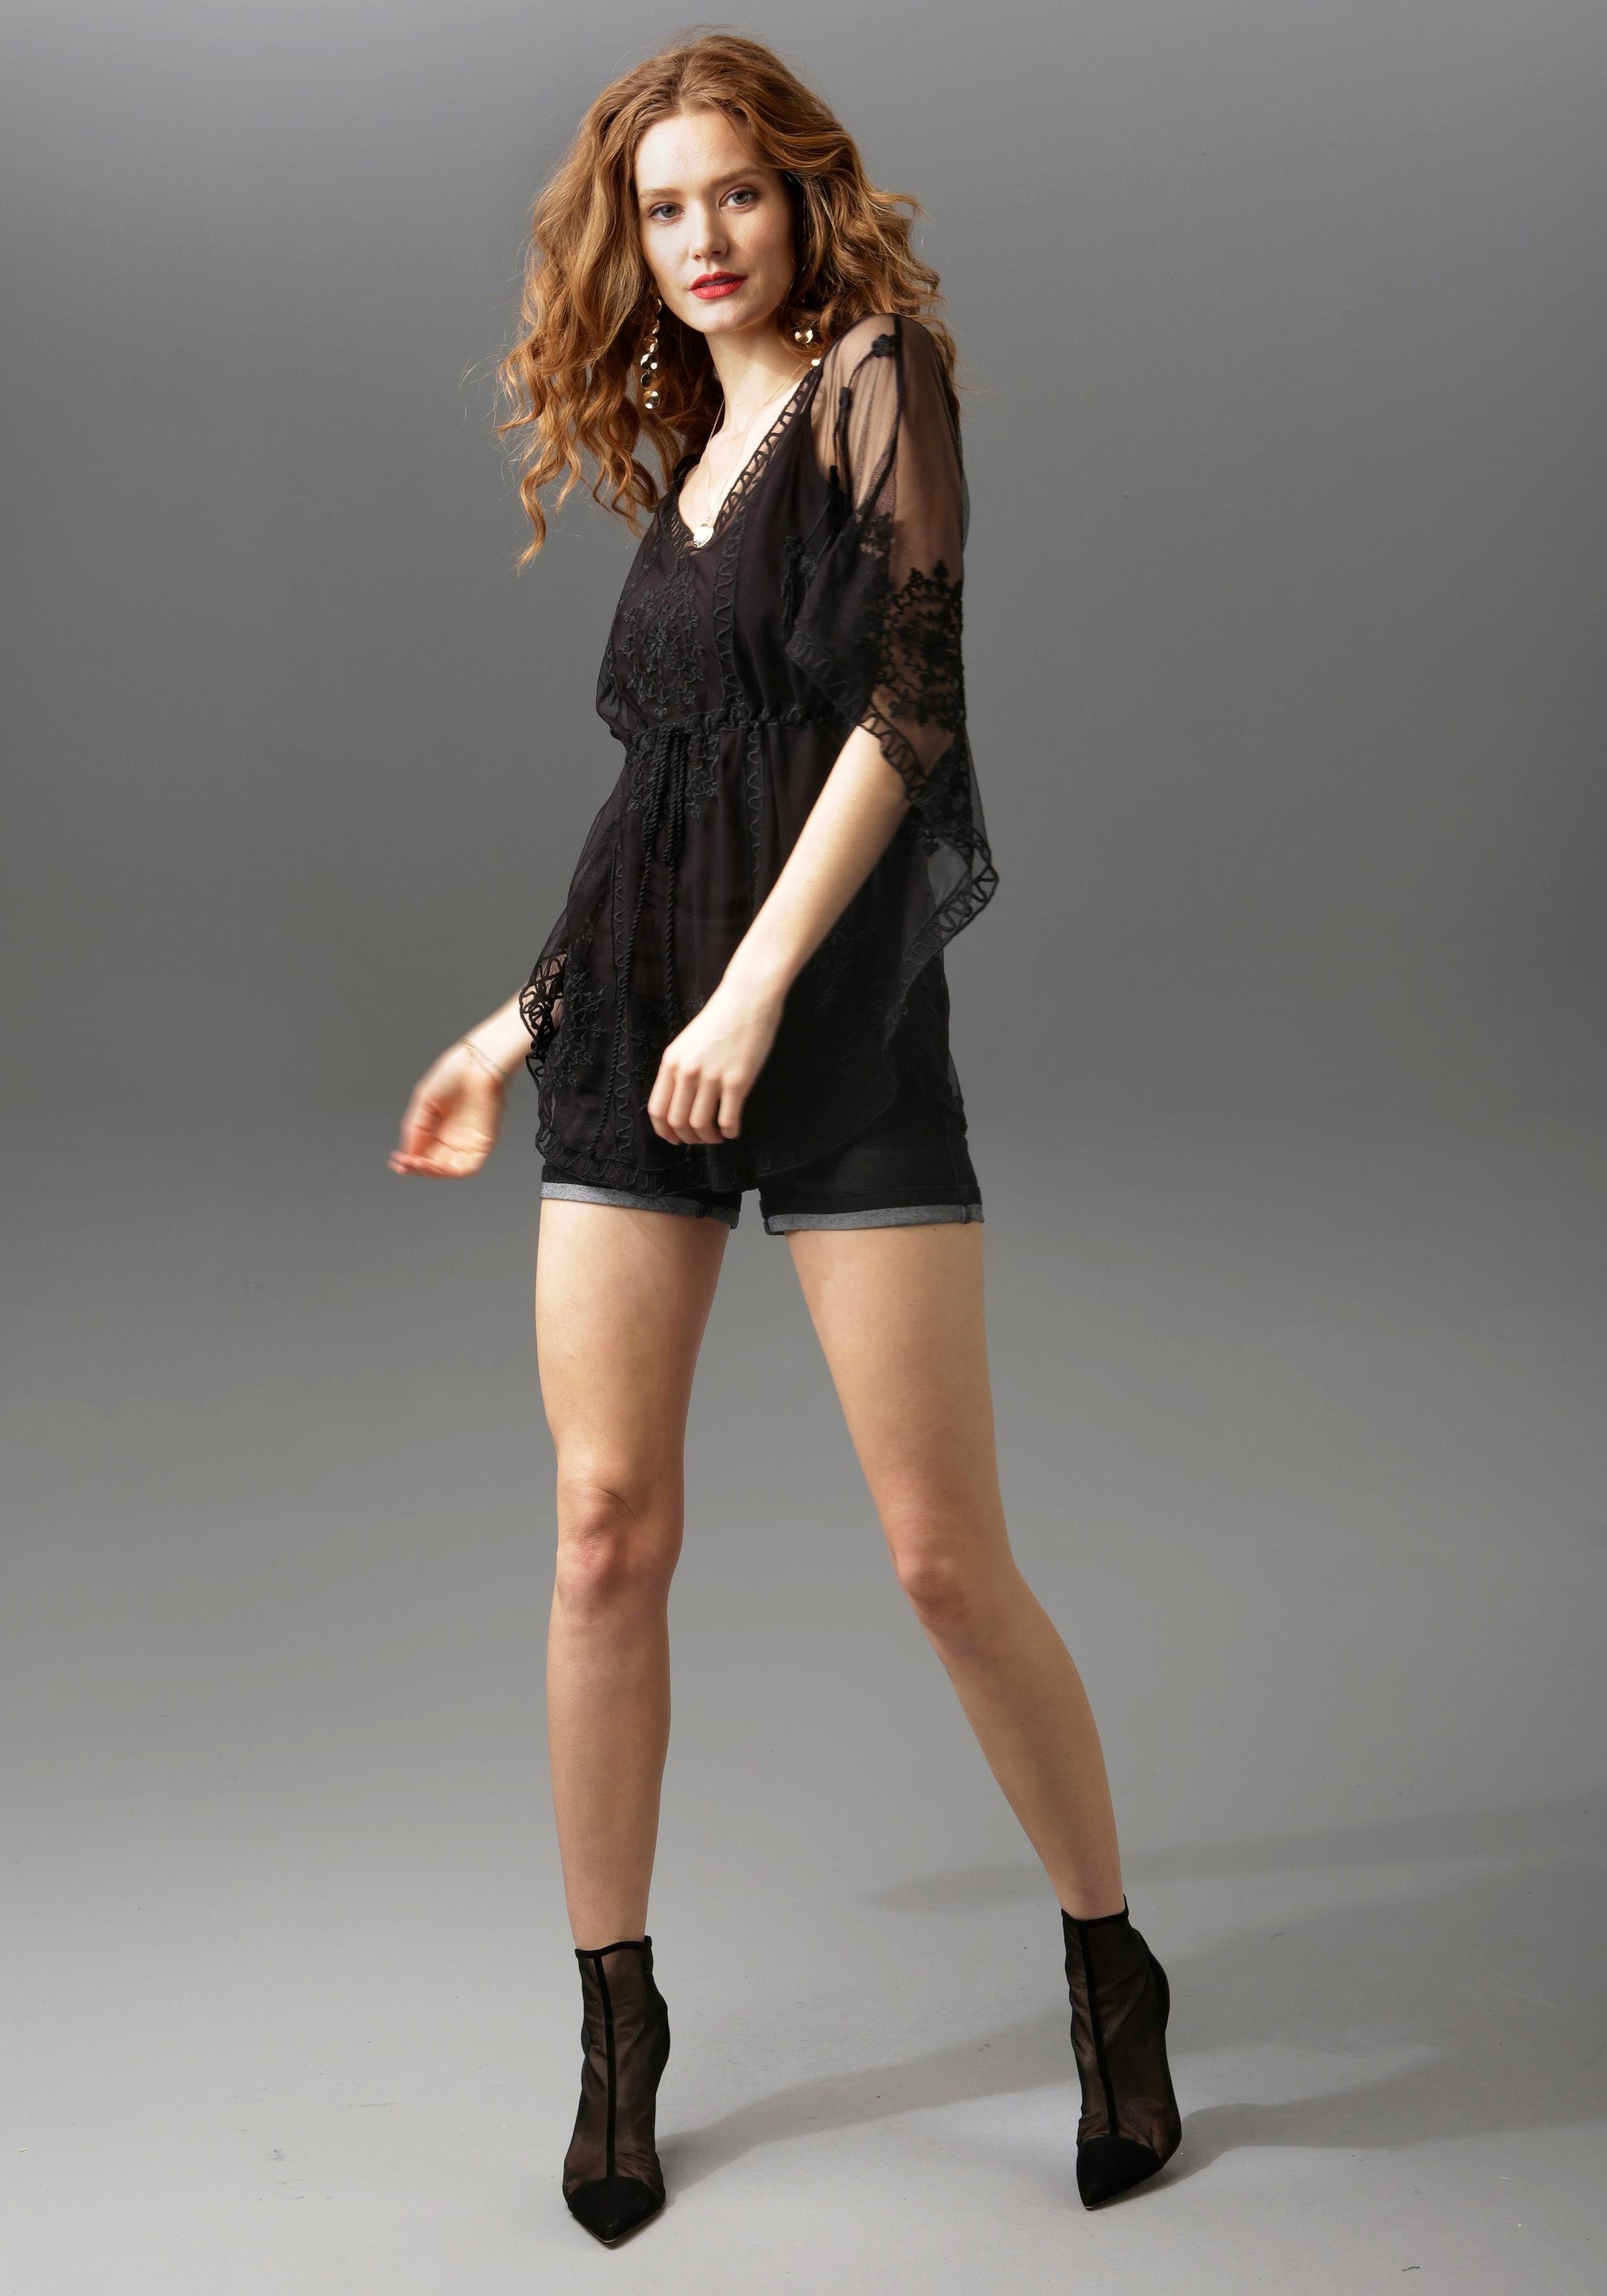 Aniston CASUAL Jeansshorts, mit leichten Abriebeffekte